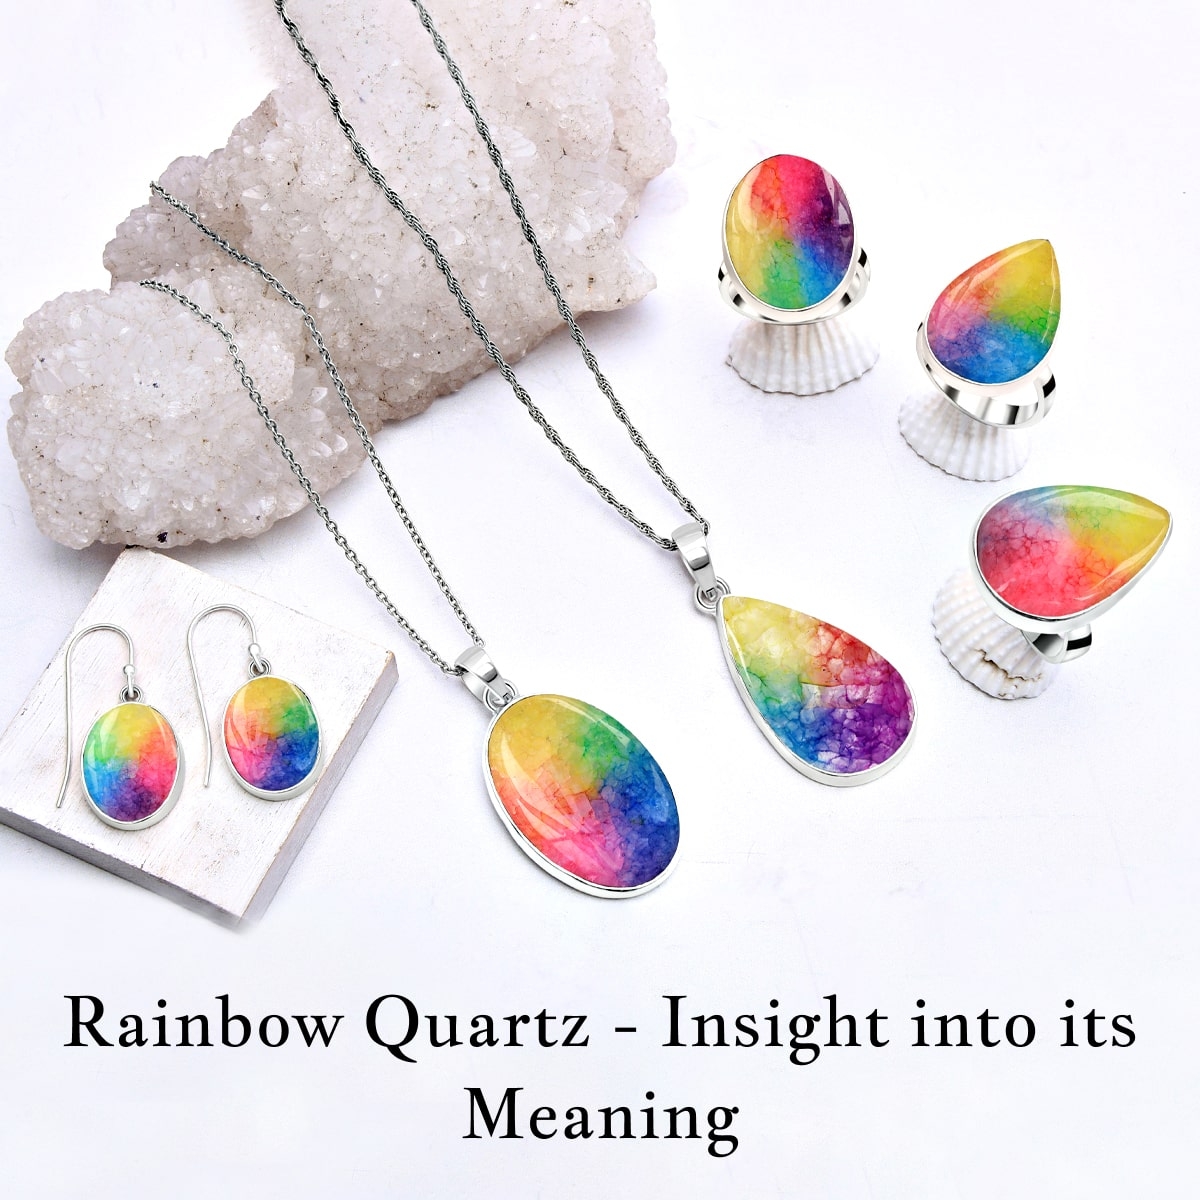 Rainbow Quartz Meaning